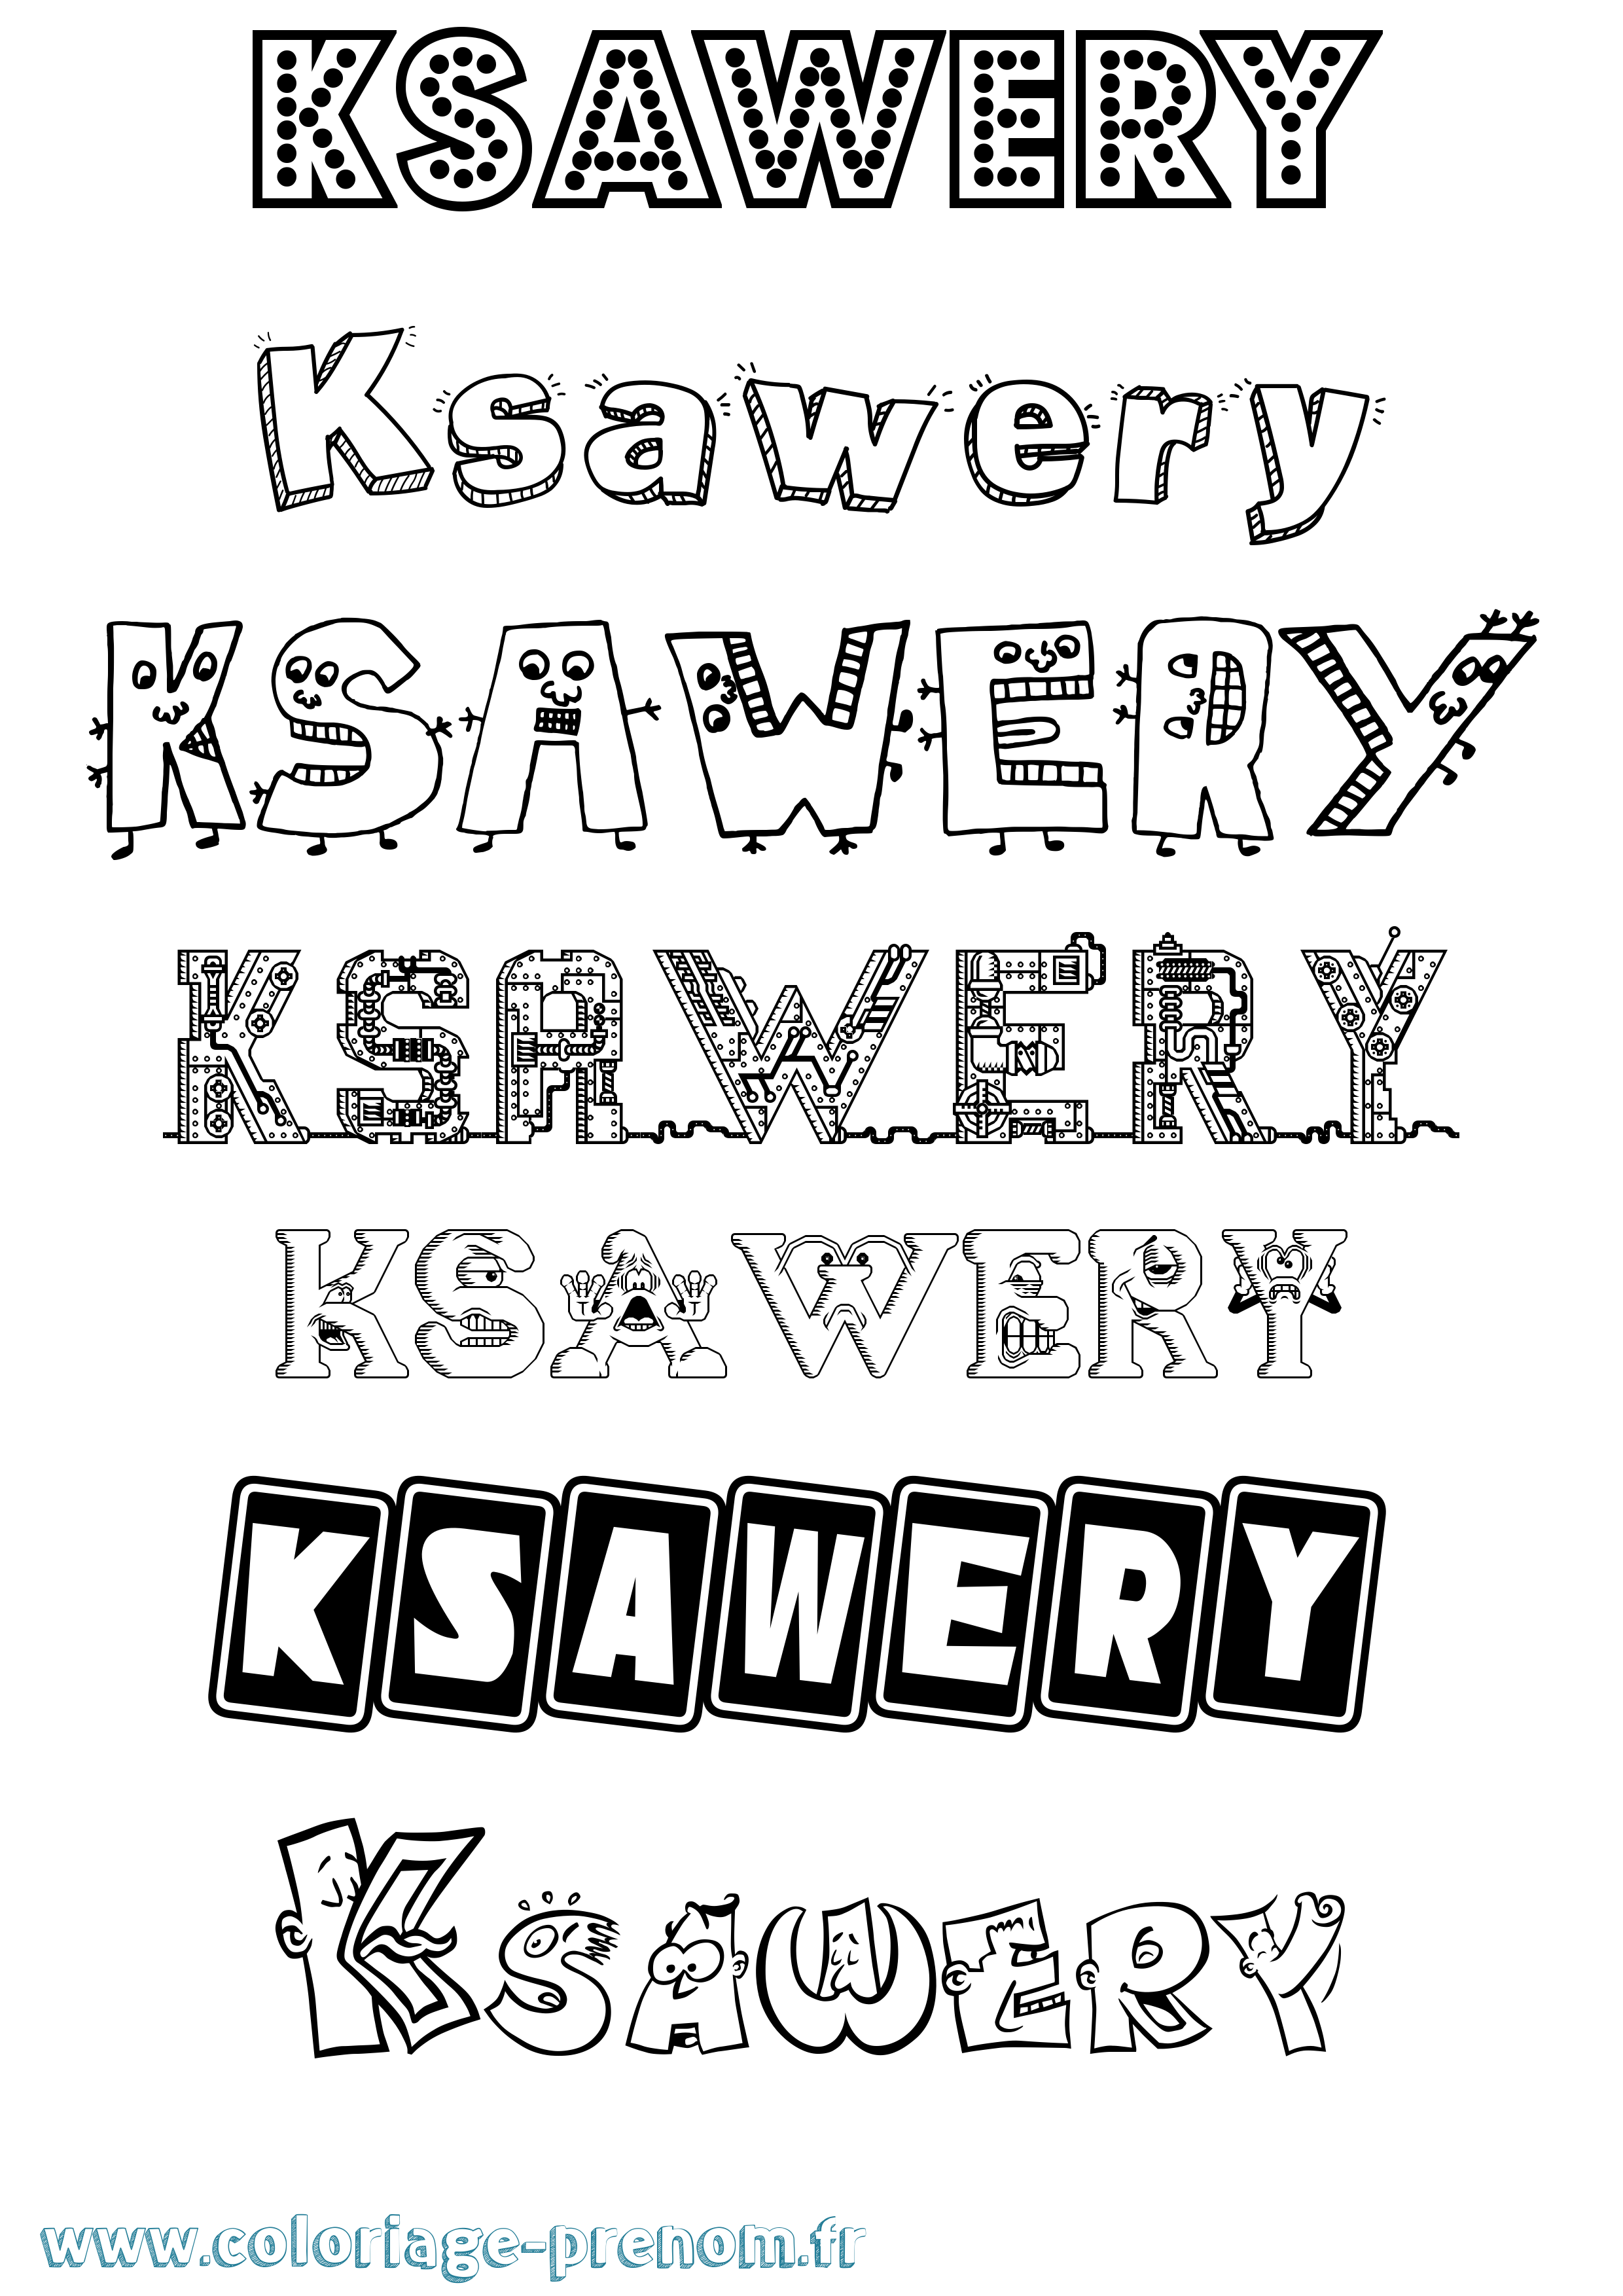 Coloriage prénom Ksawery Fun